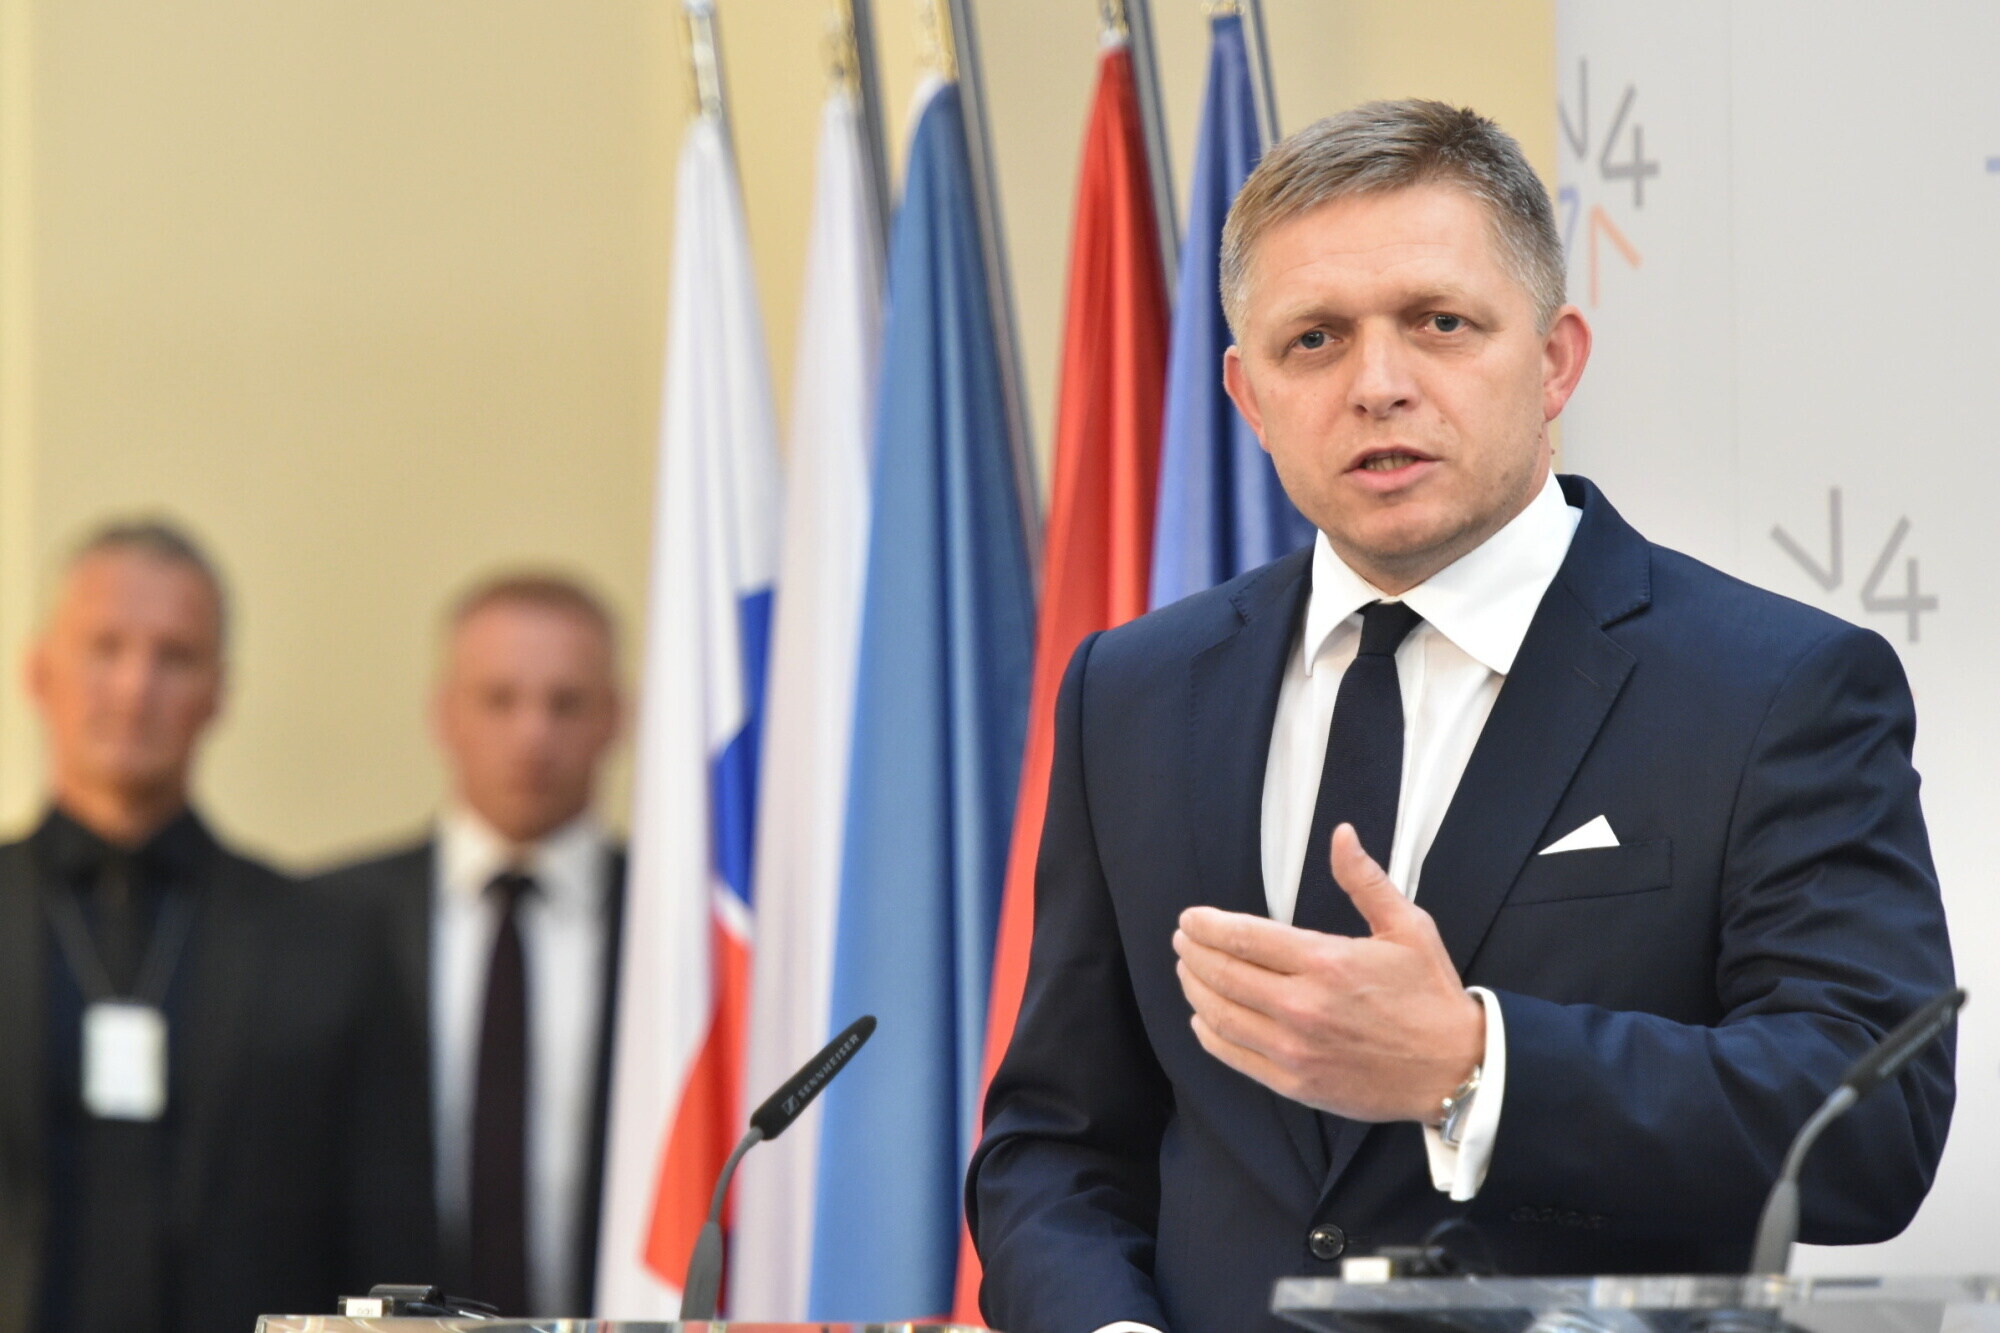 Slovensko zná novou podobu vlády. Smer získá post premiéra šest ministerstev